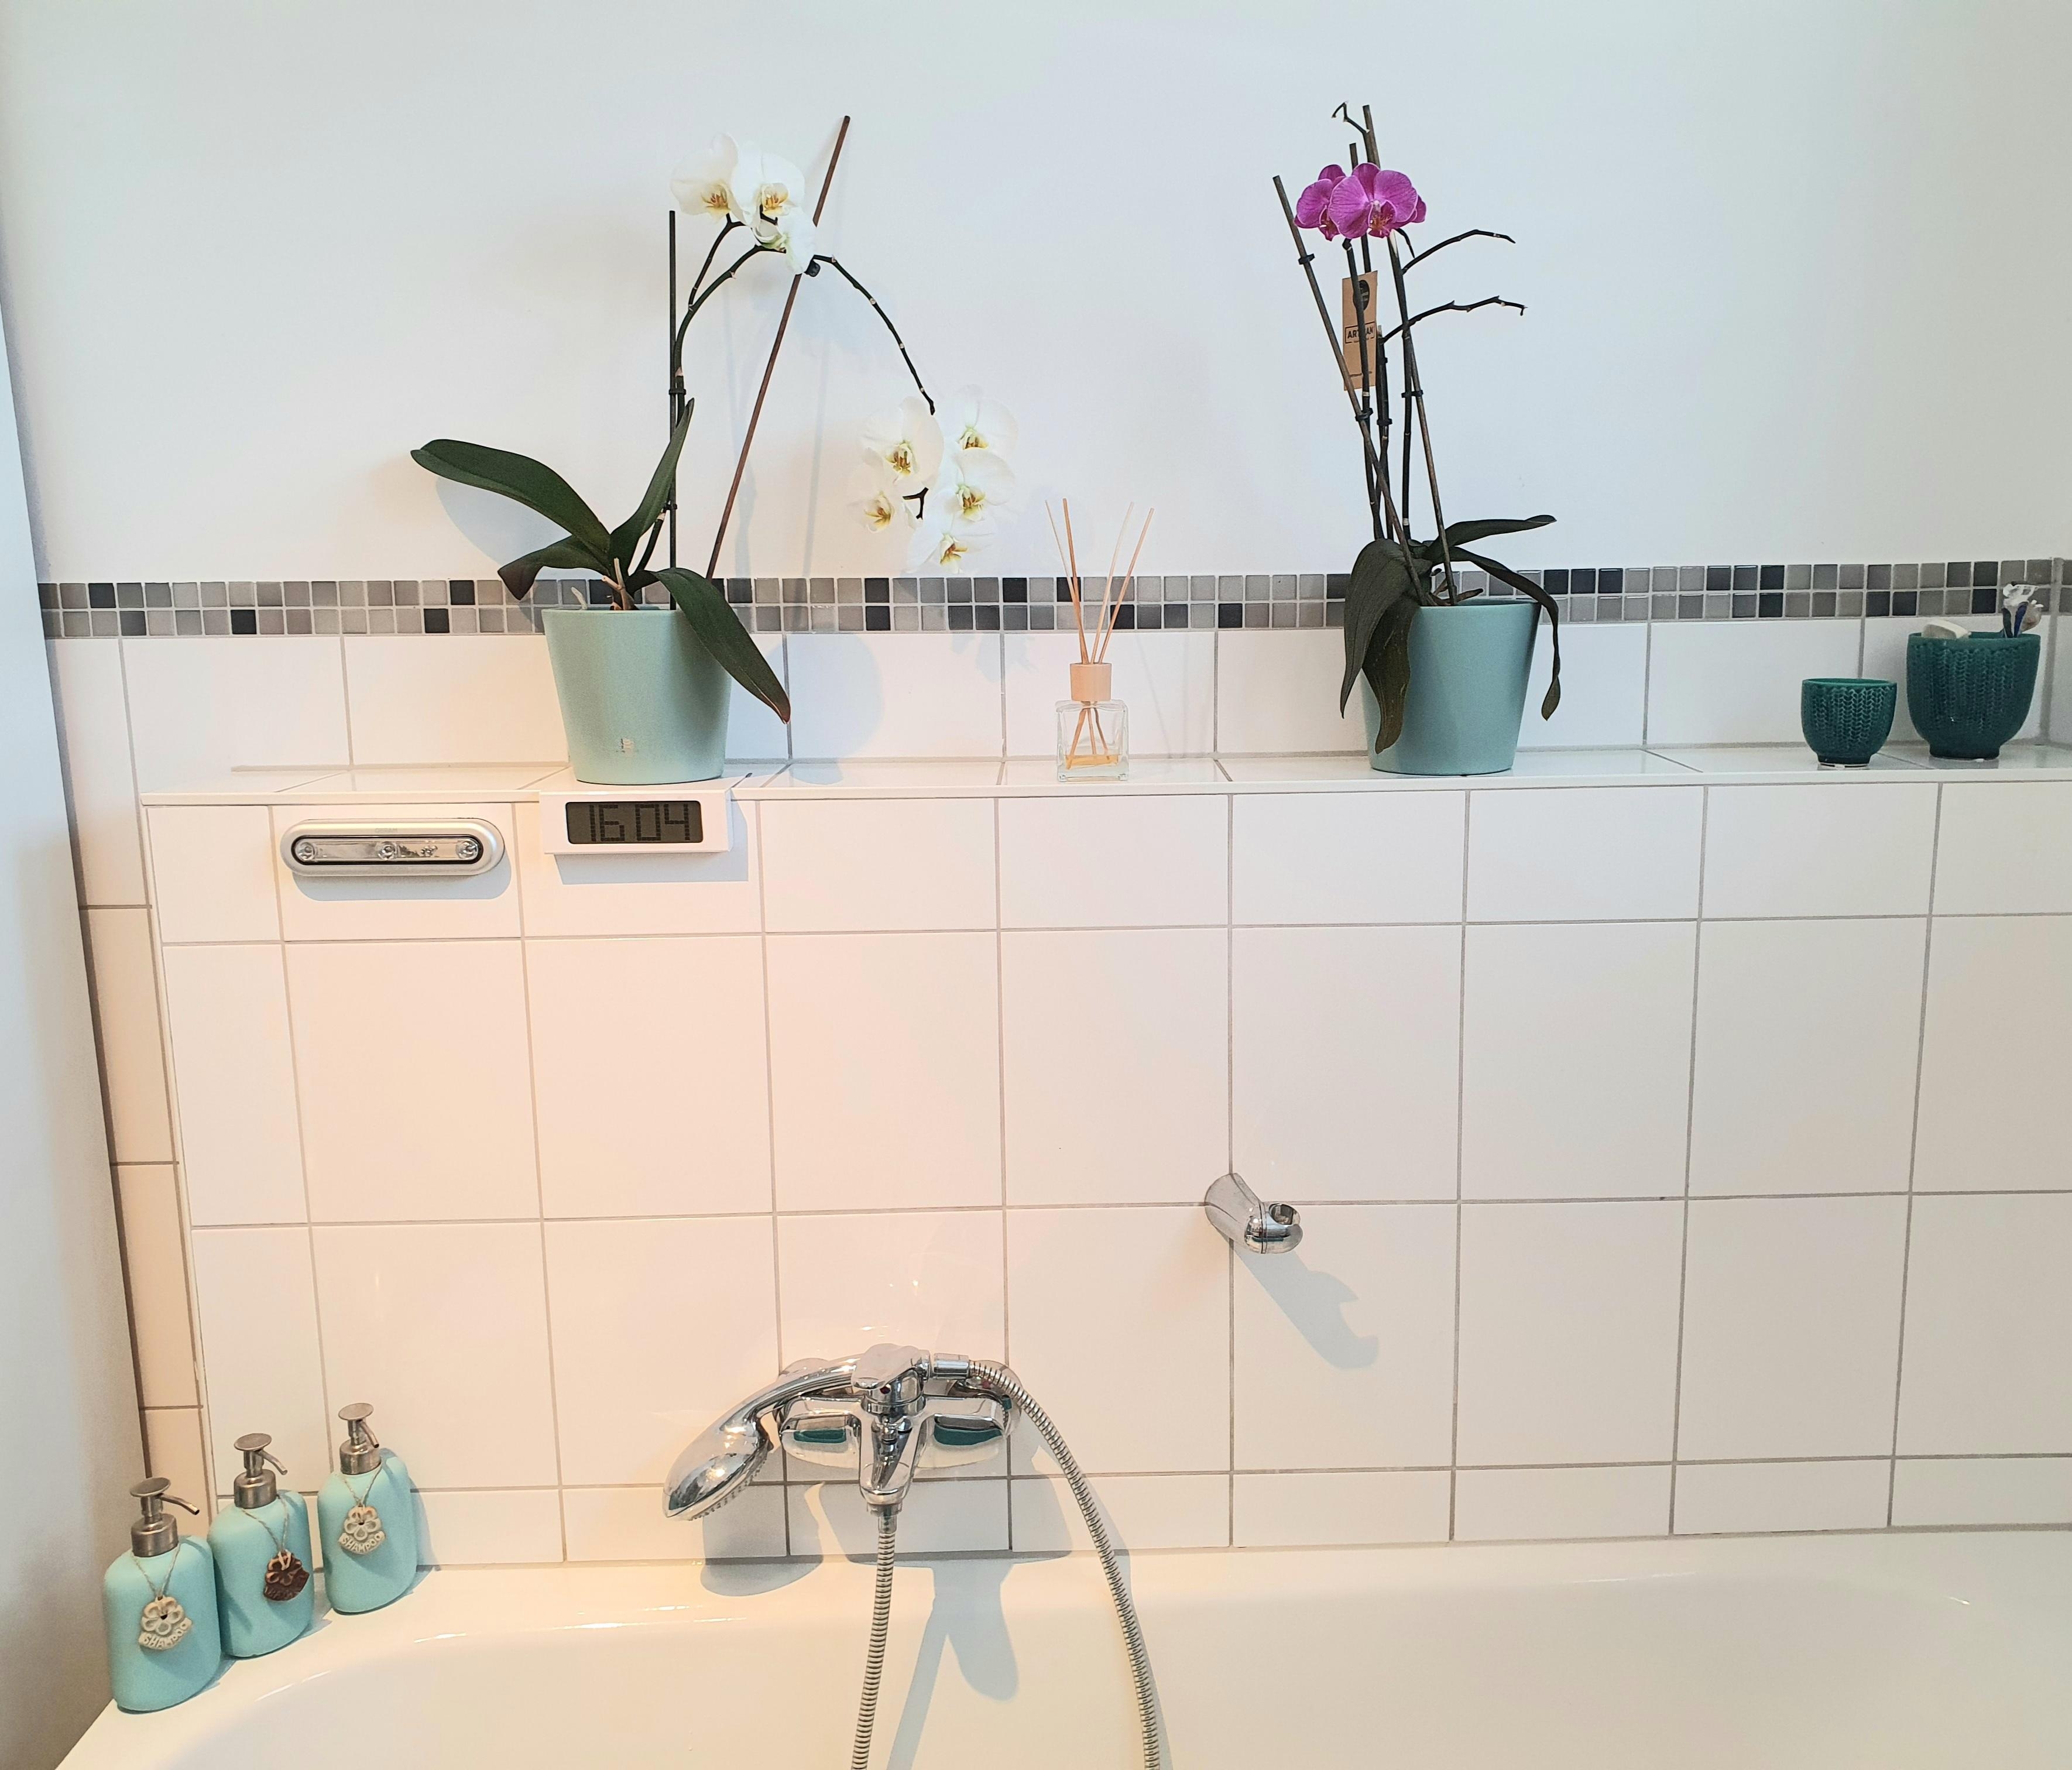 Ich habe im #Bad mal wieder etwas umdekoriert und den #Orchideen einen neuen Standort geschenkt #Deko #stayathome